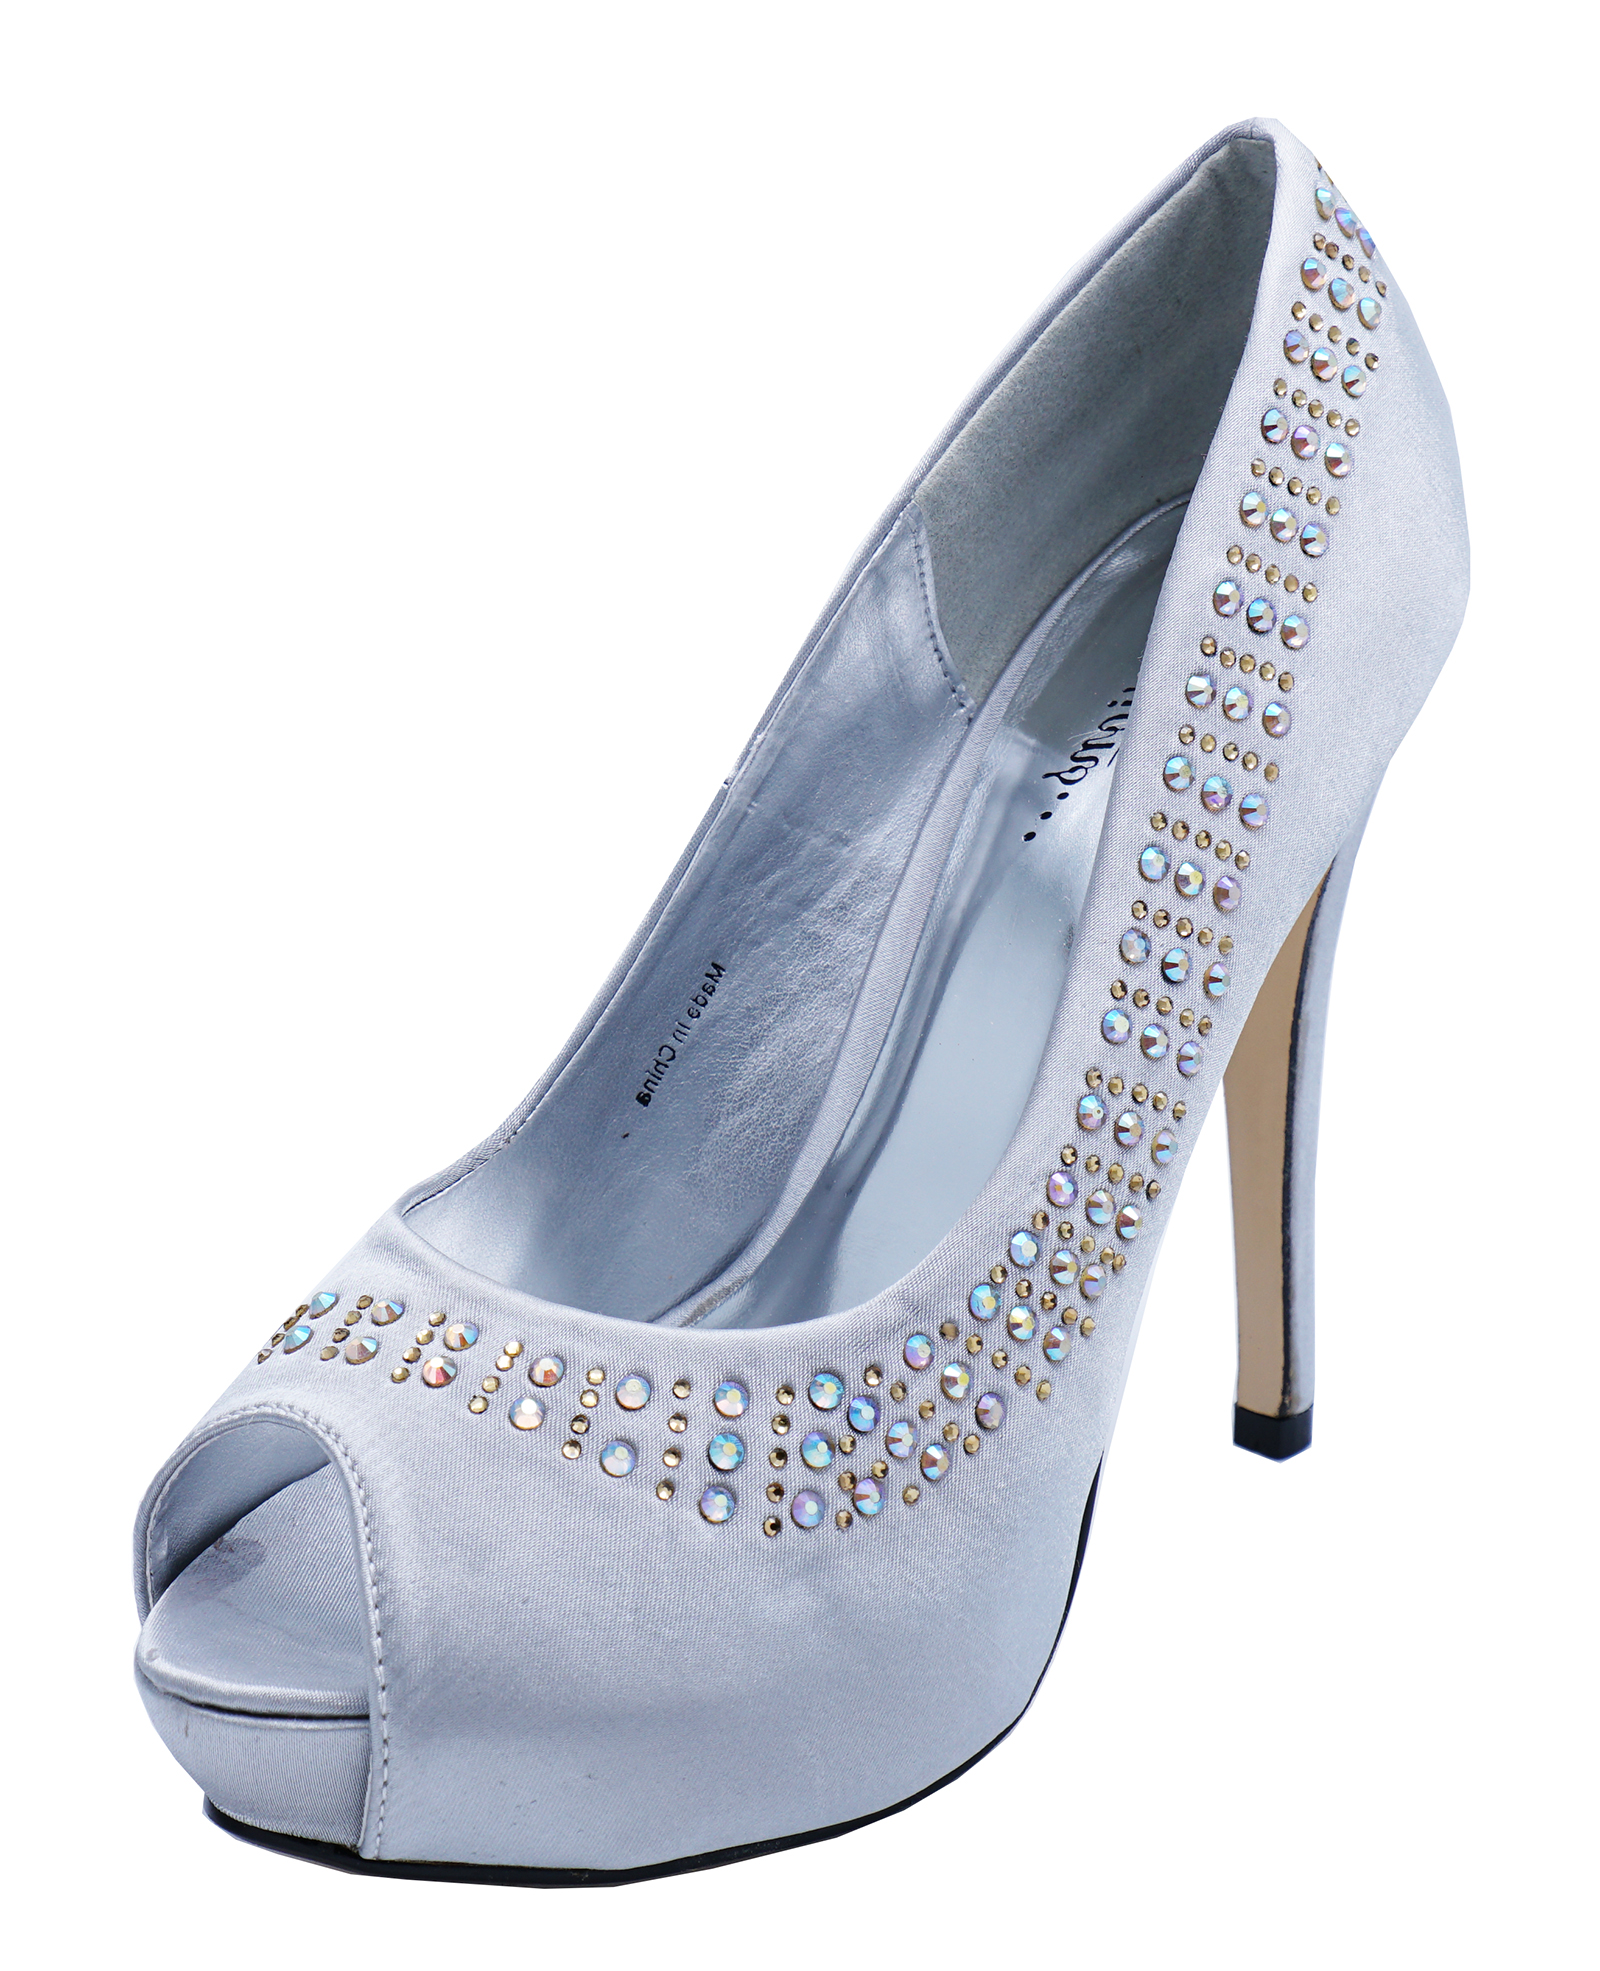 silver diamante high heels